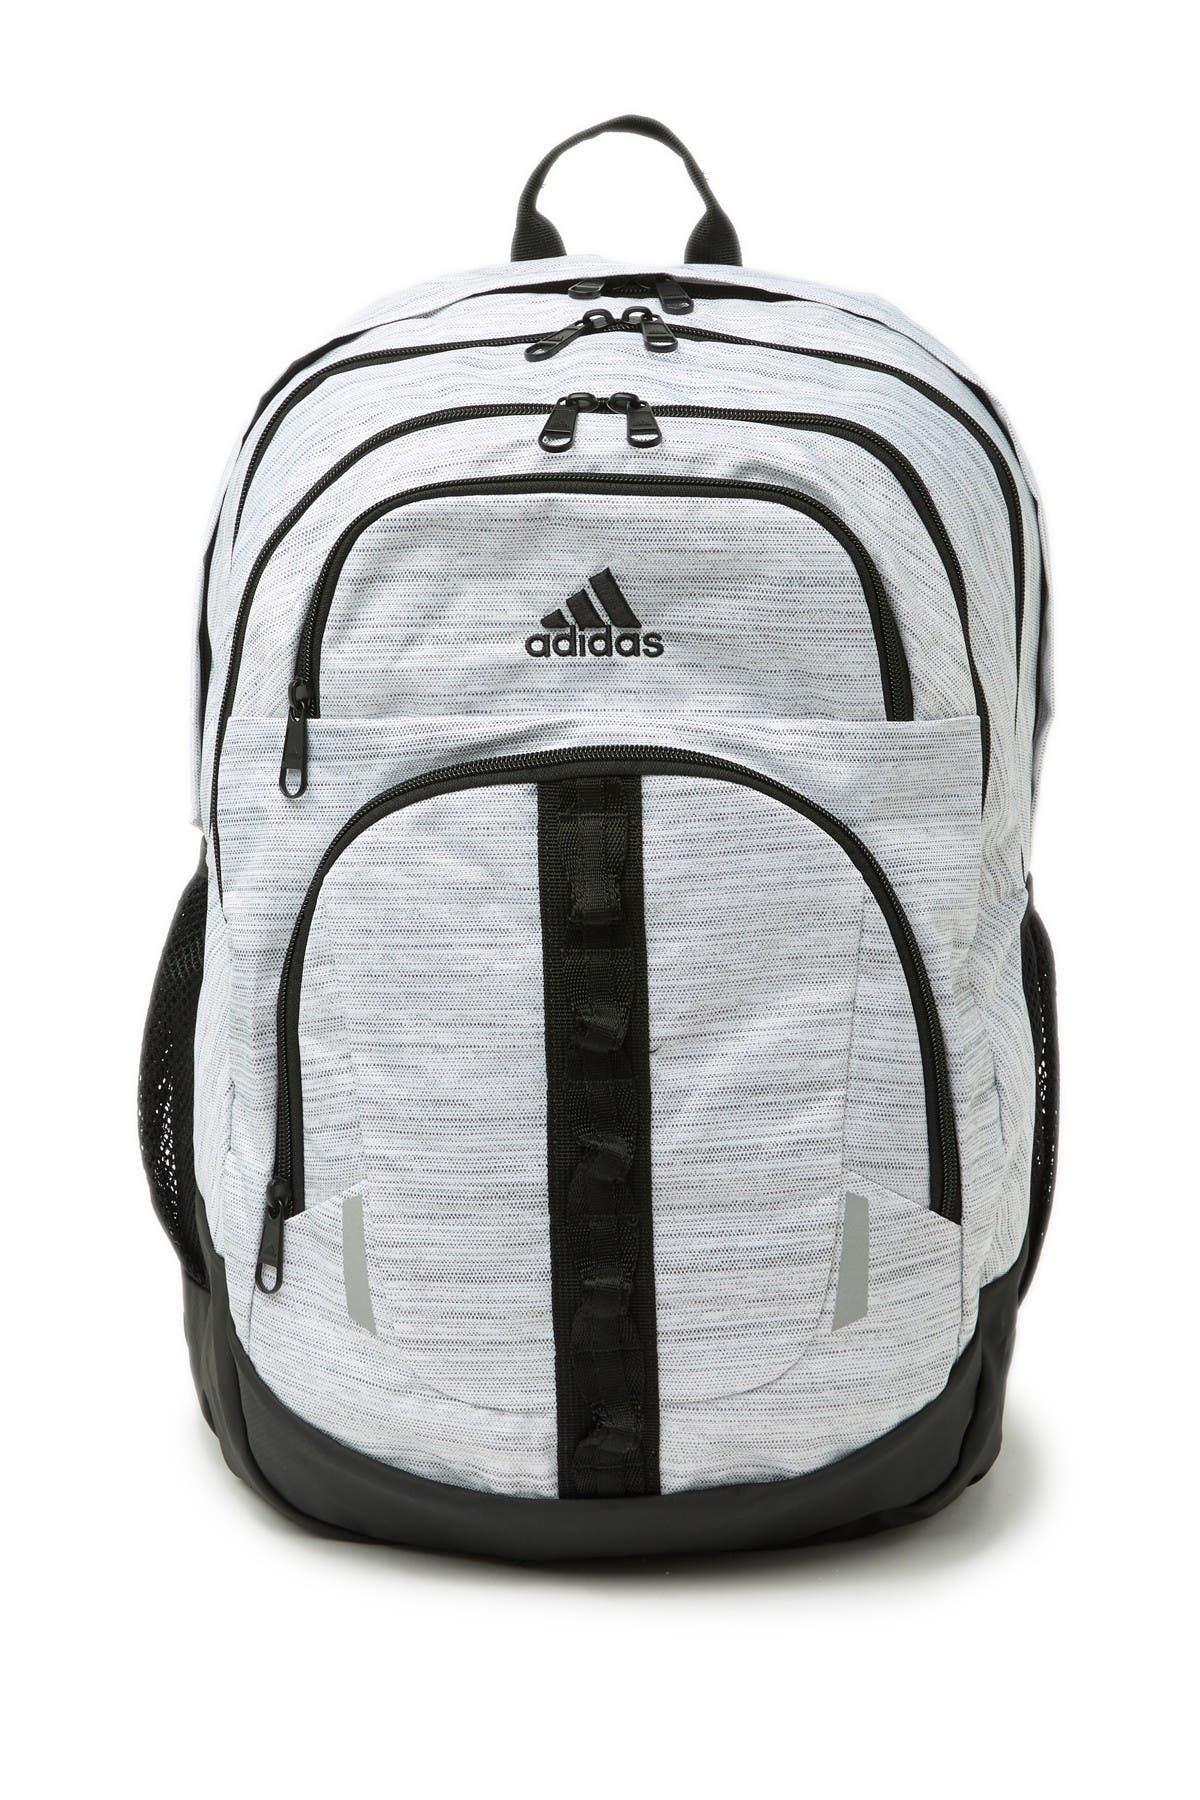 adidas prime v backpack